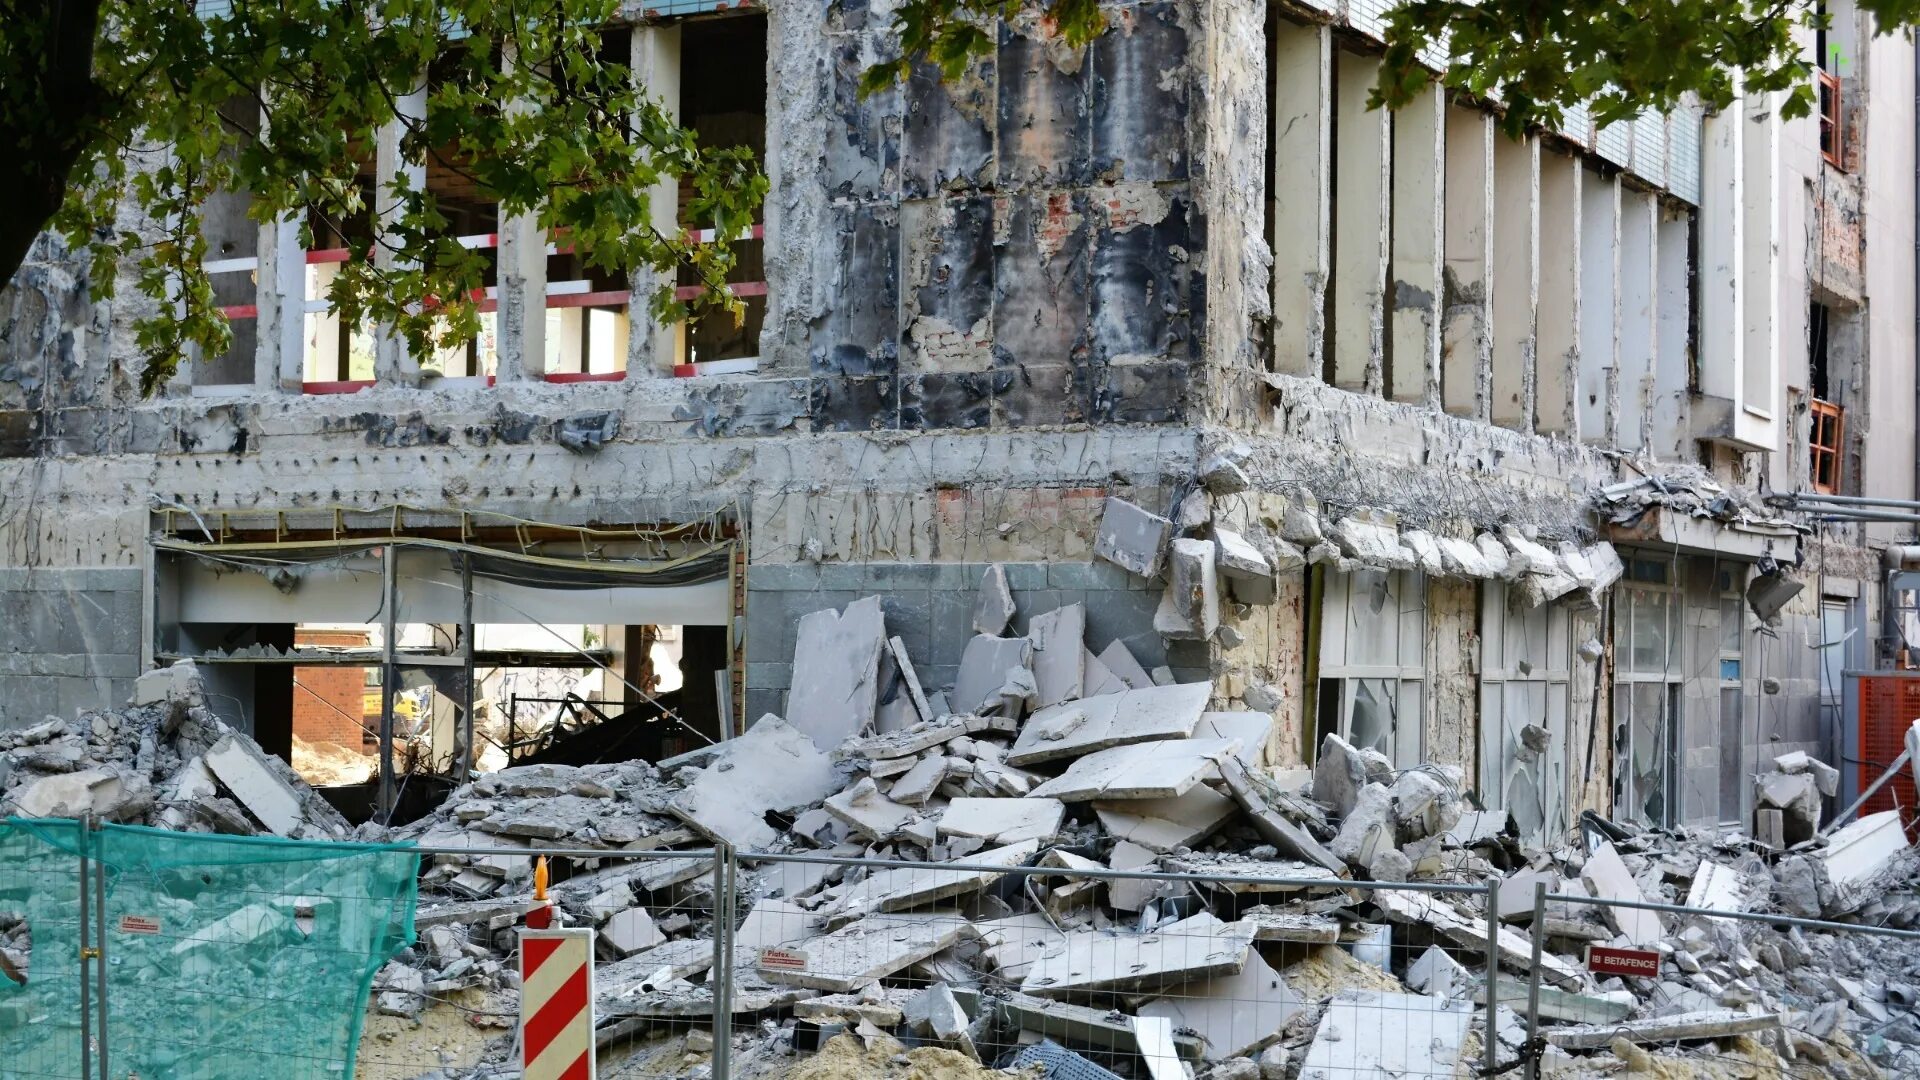 Землетрясение в этом году. Землетрясение на Гаити 2010 президентский дворец. Нефтегорск землетрясение 1995. Землетрясение в Турции 2023. Турция землетрясение сейчас 2023.